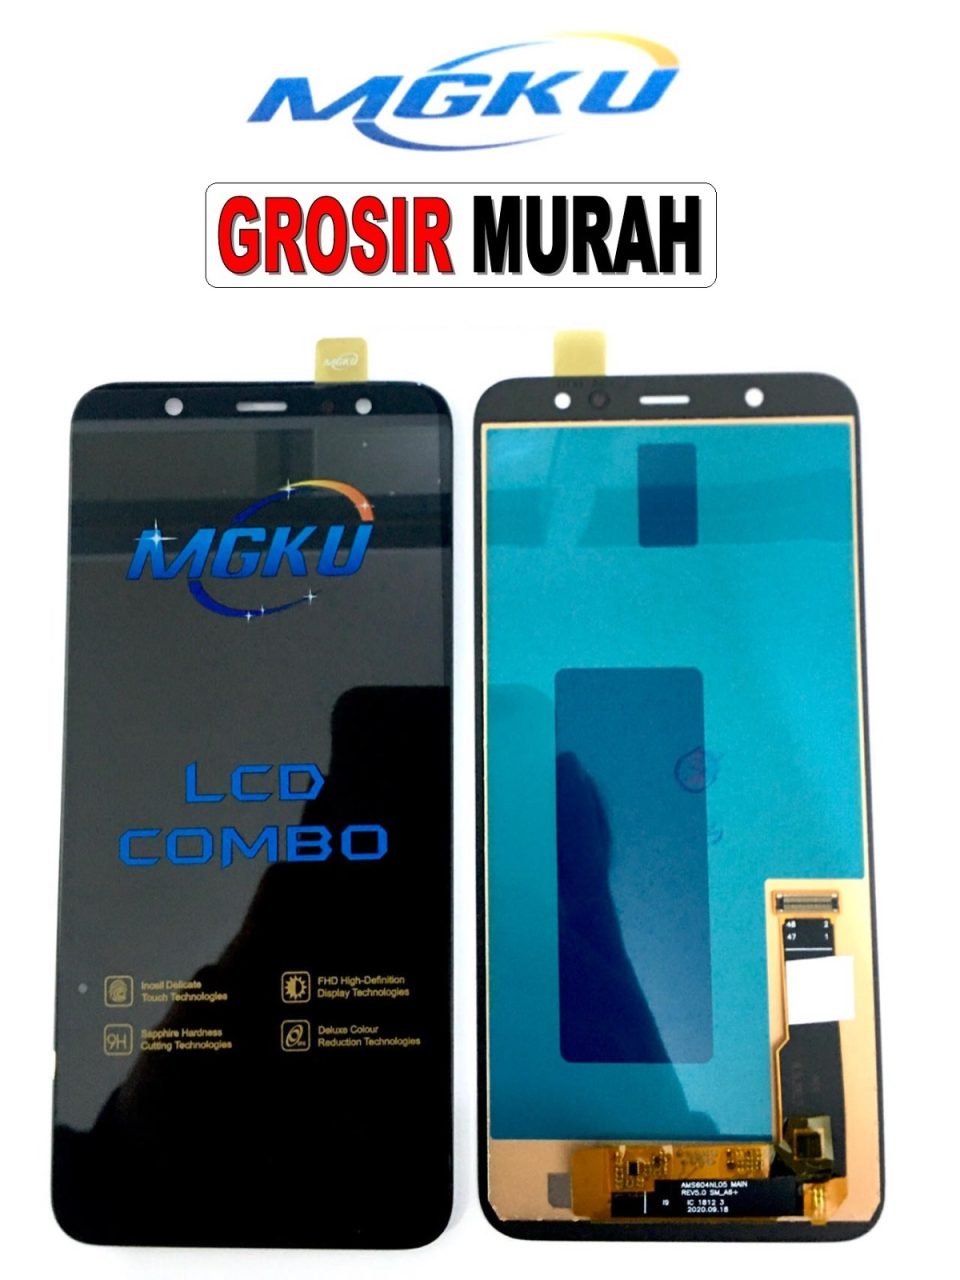 Samsung A605 A6 Plus 2018 Lcd MGKU Lcd Display Digitizer Touch Screen Spare Part Sparepart hp murah Grosir Lcd Terlengkap Meetoo winfocus incell lion mgku og moshi